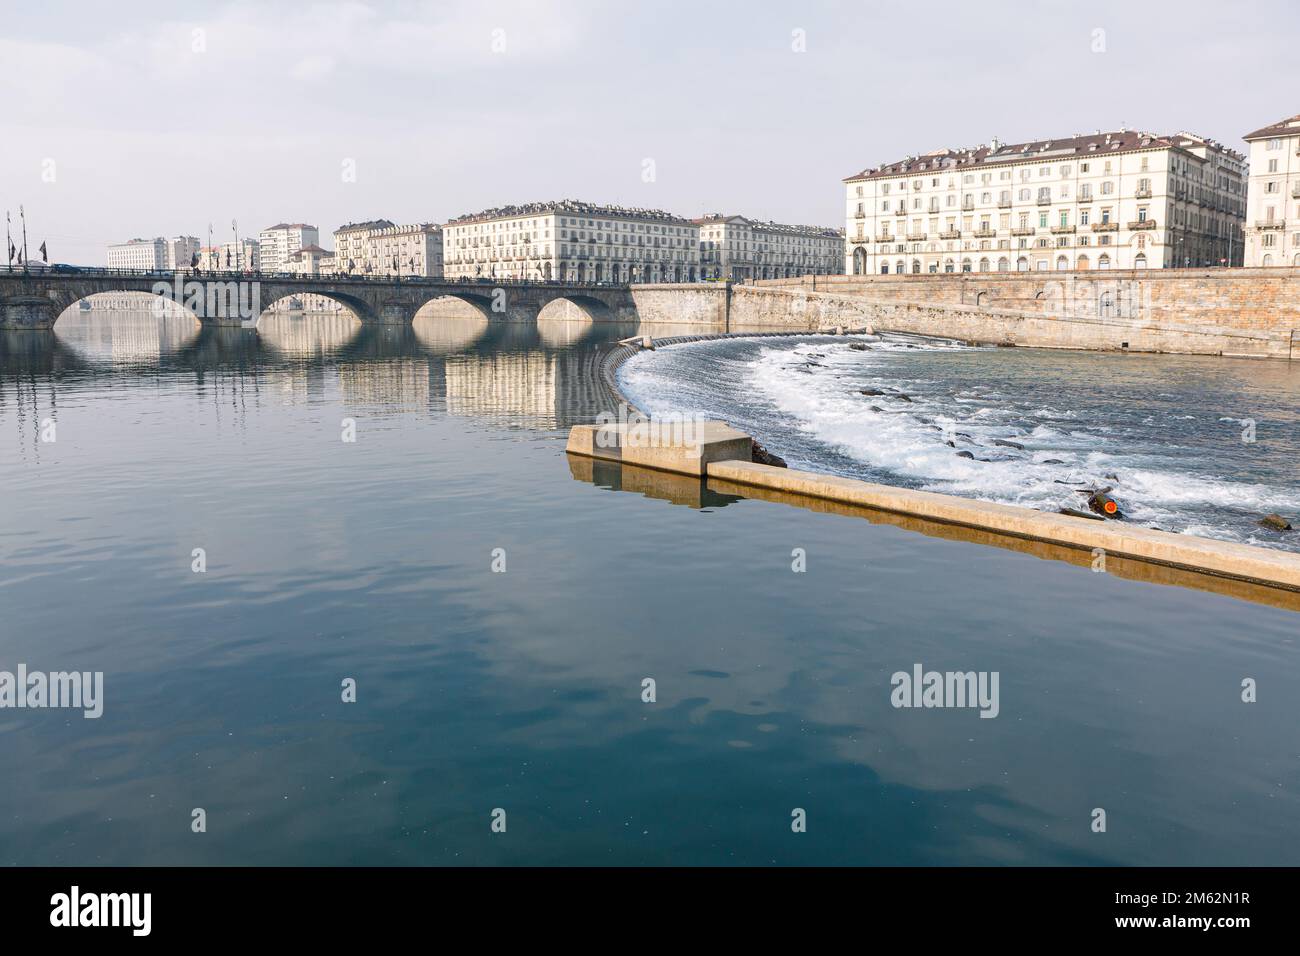 River Po in Turin . Ponte Vittorio Emanuele in Torino . Italian city scenery Stock Photo